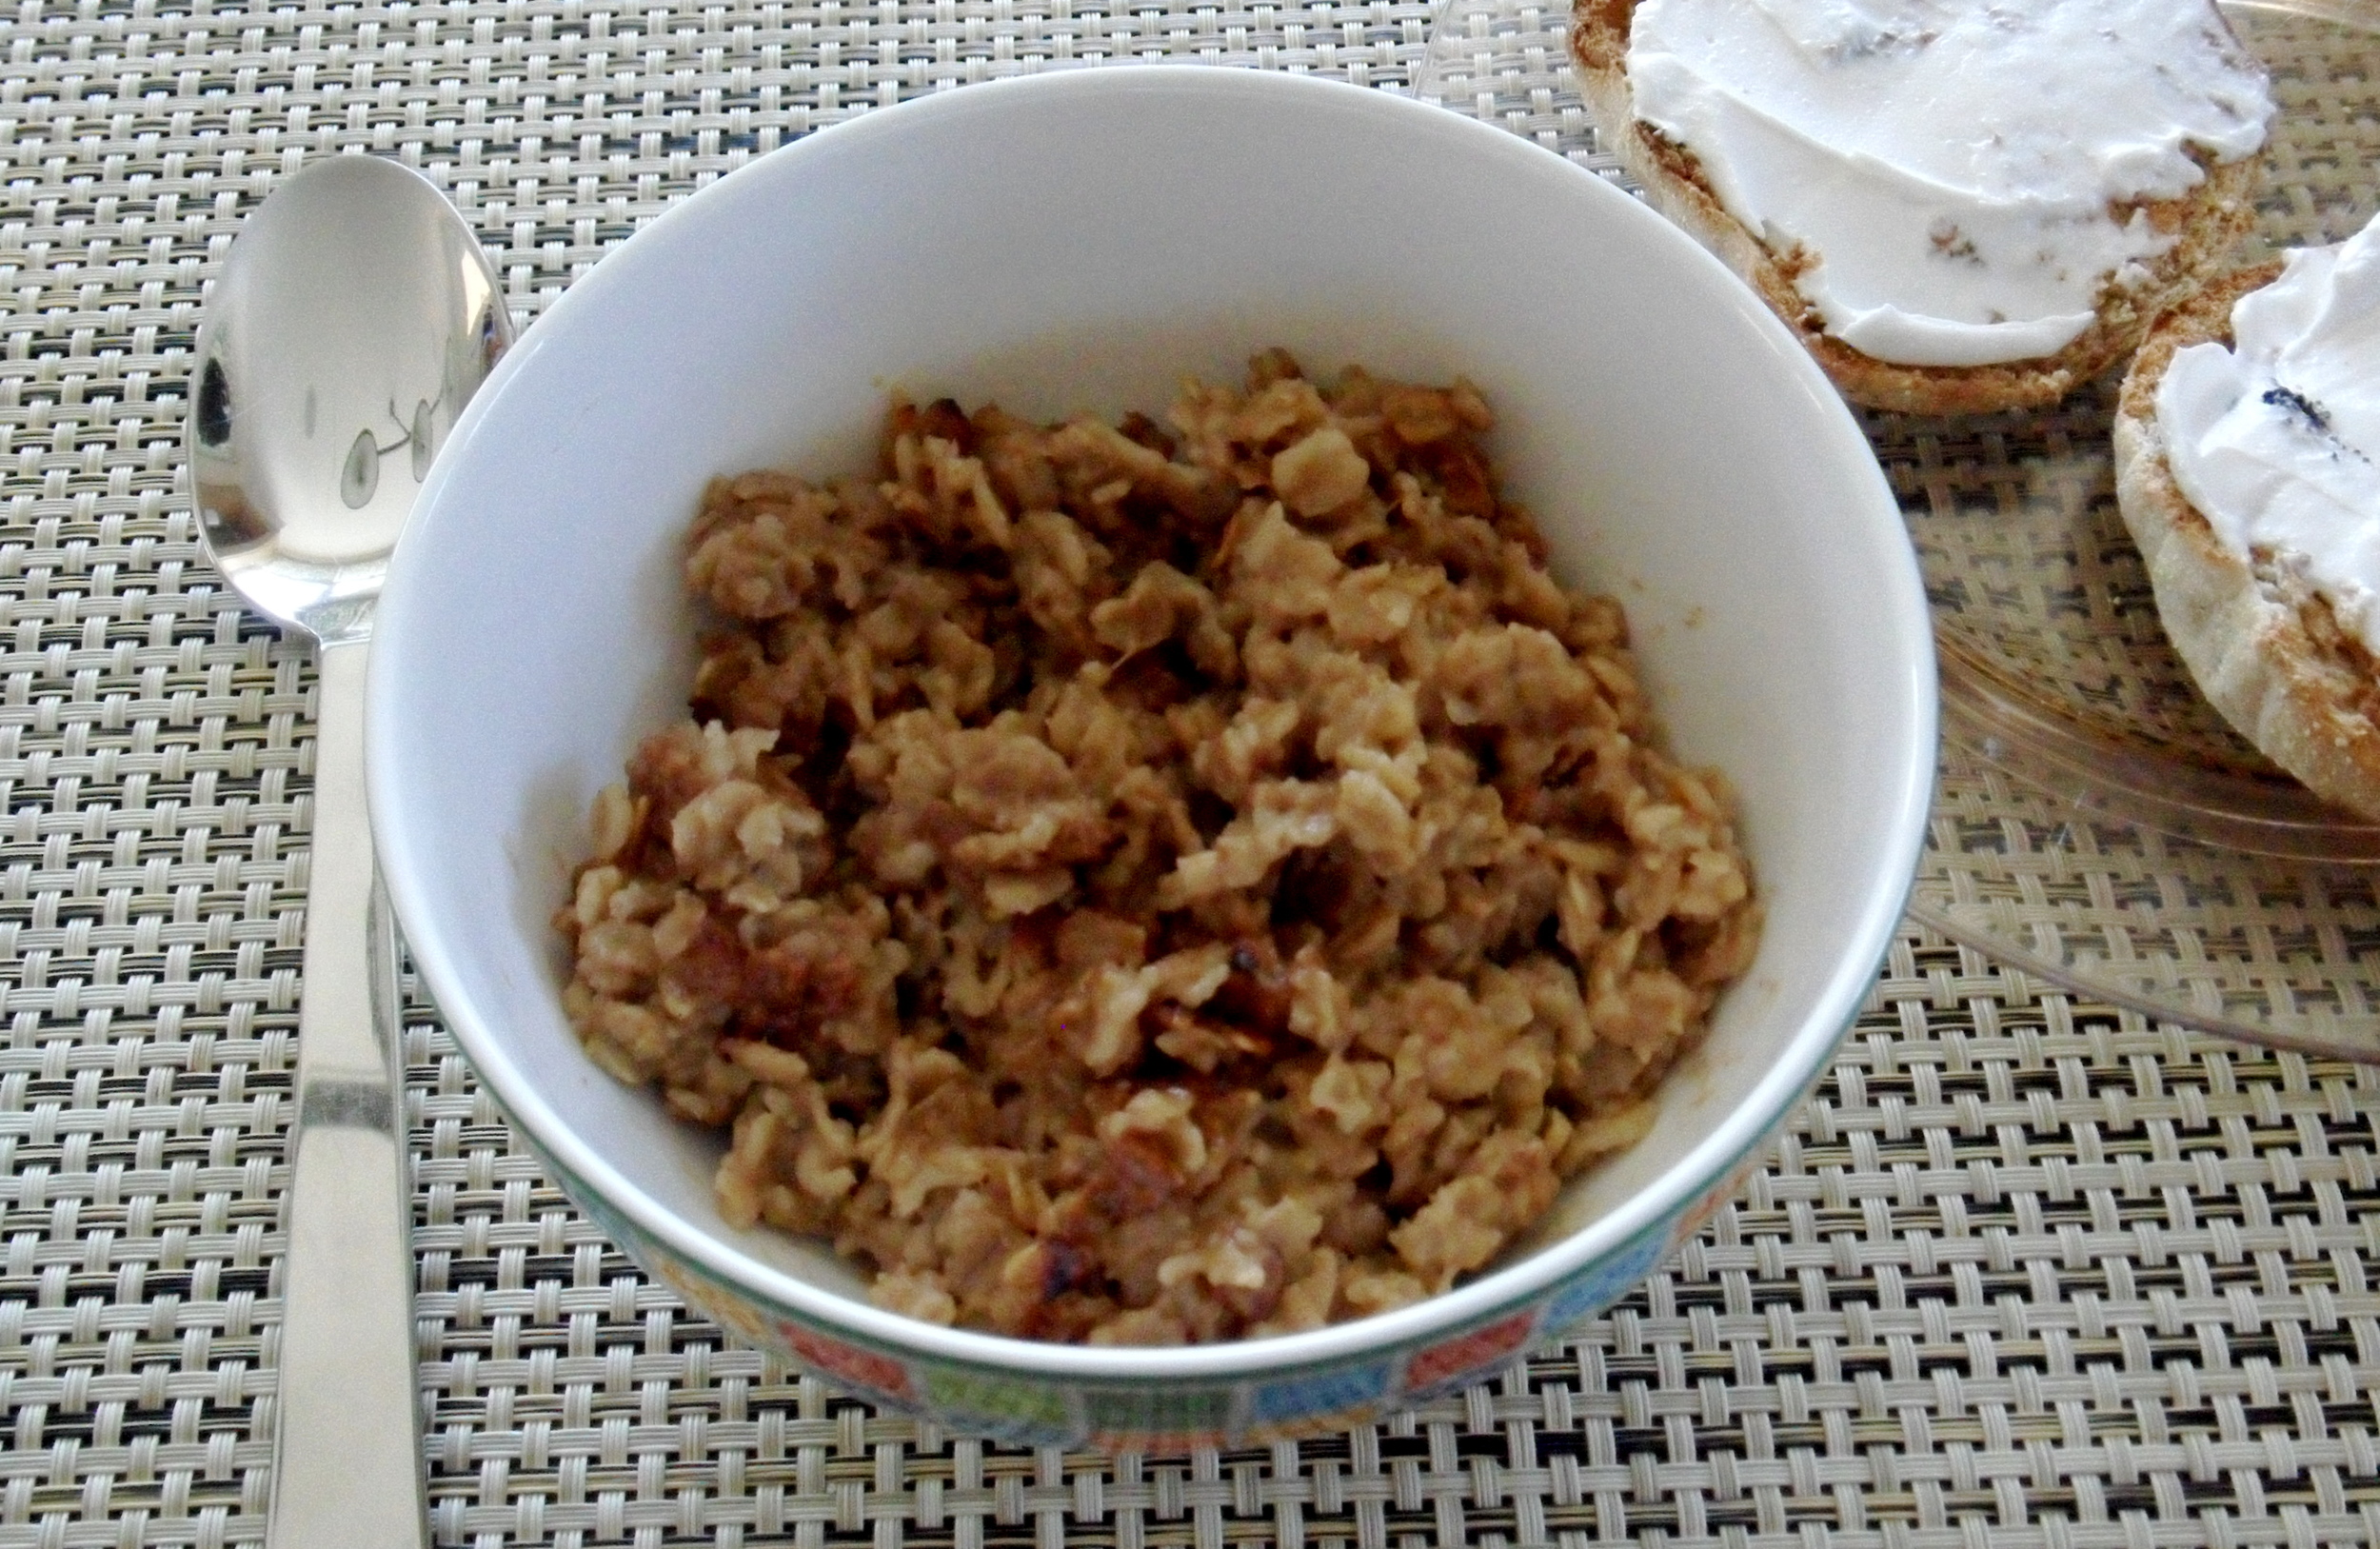 Vegan breakfast is easy when oatmeal brulee is on the menu!